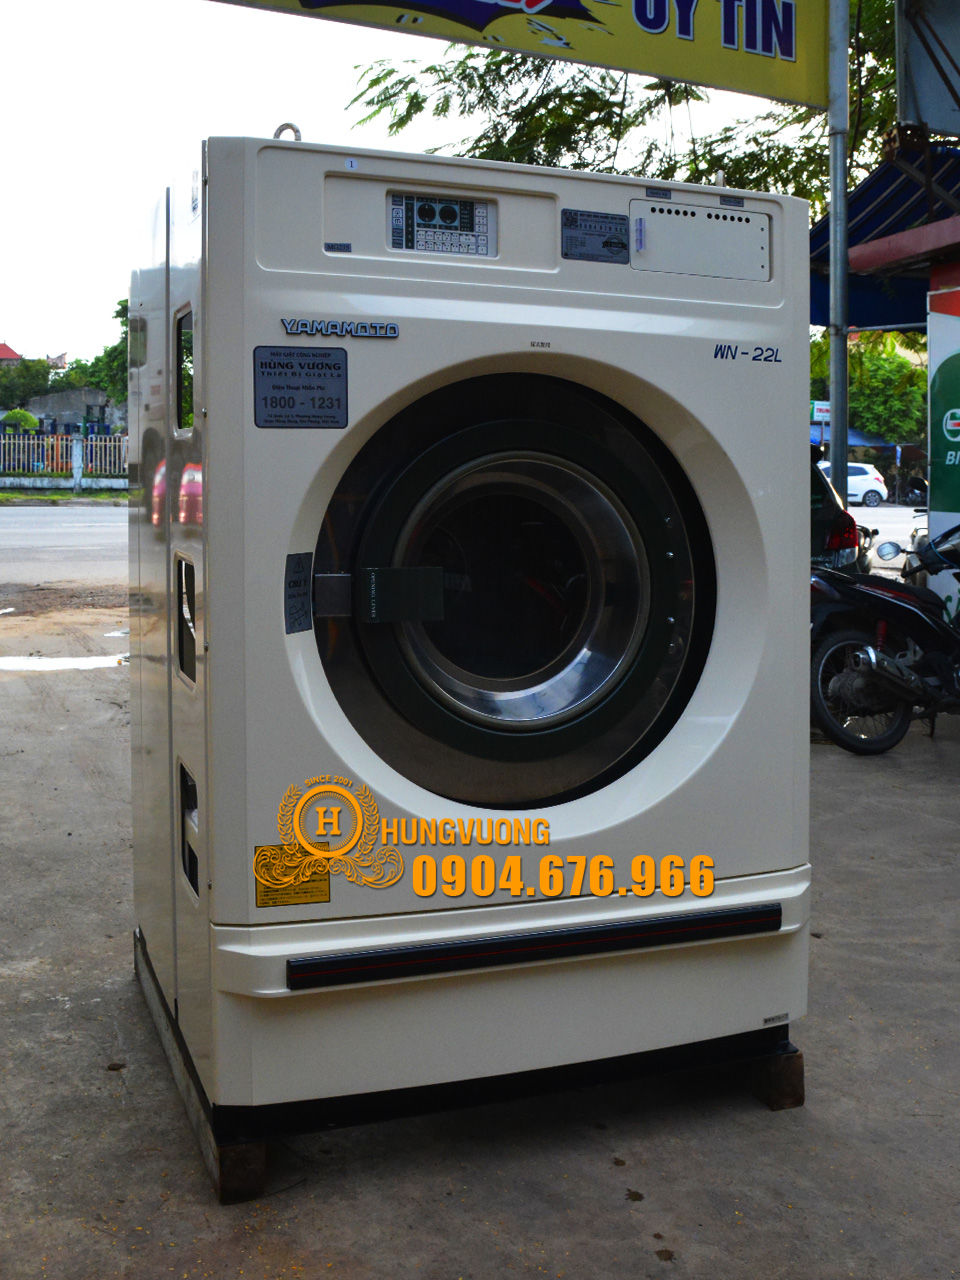 Mặt nghiêng máy giặt công nghiệp YAMAMOTO WN-22L, 22kg, chống rung, biến tần, Nhật